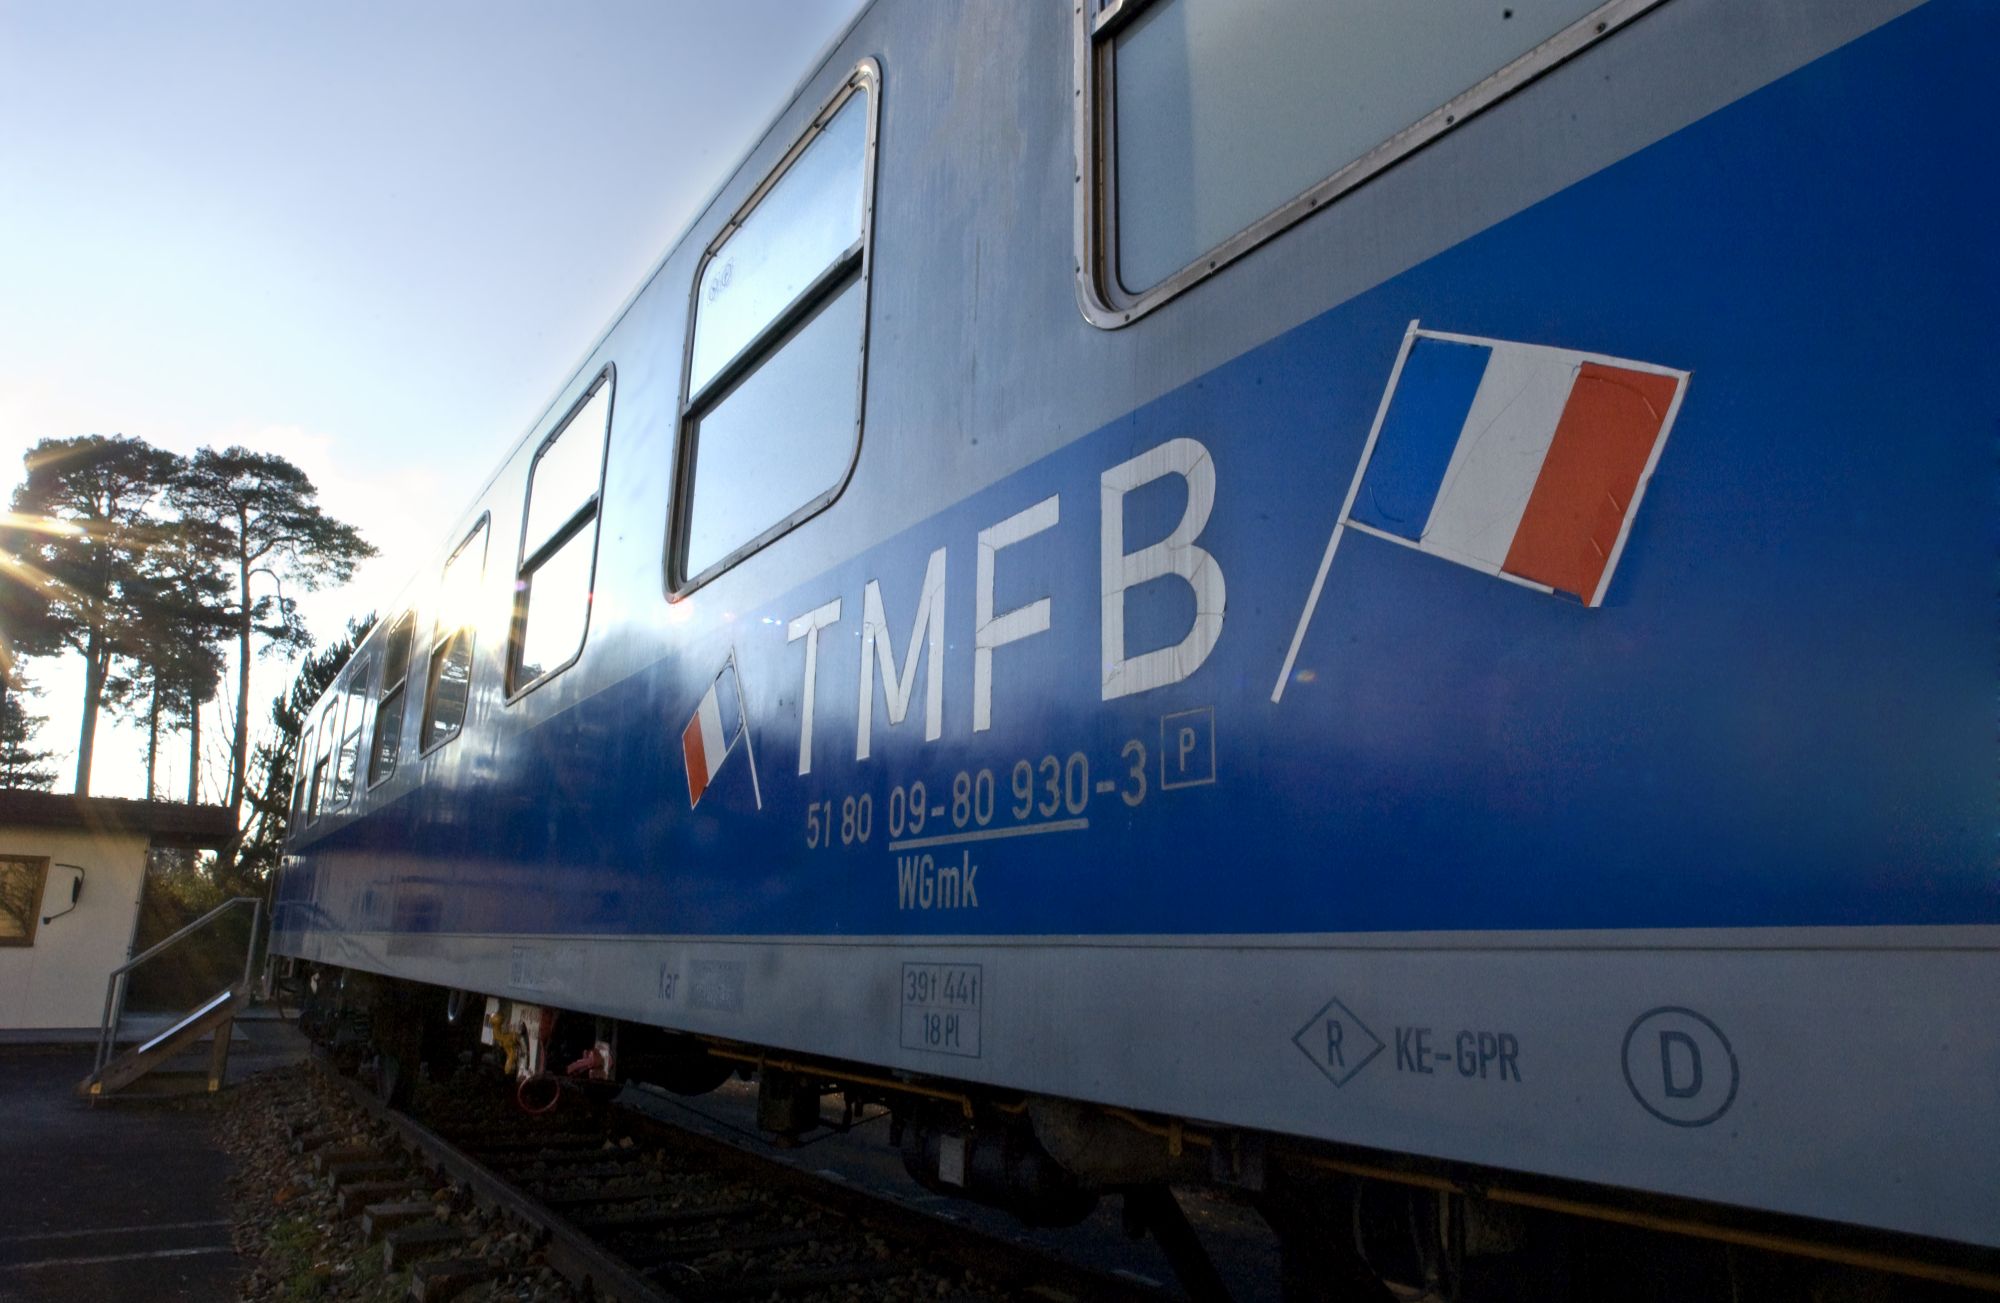 Grau-blau lackierter Eisenbahnwaggon mit der französischen Fahne und dem Schriftzug TMFB für Train militaire français de Berlin